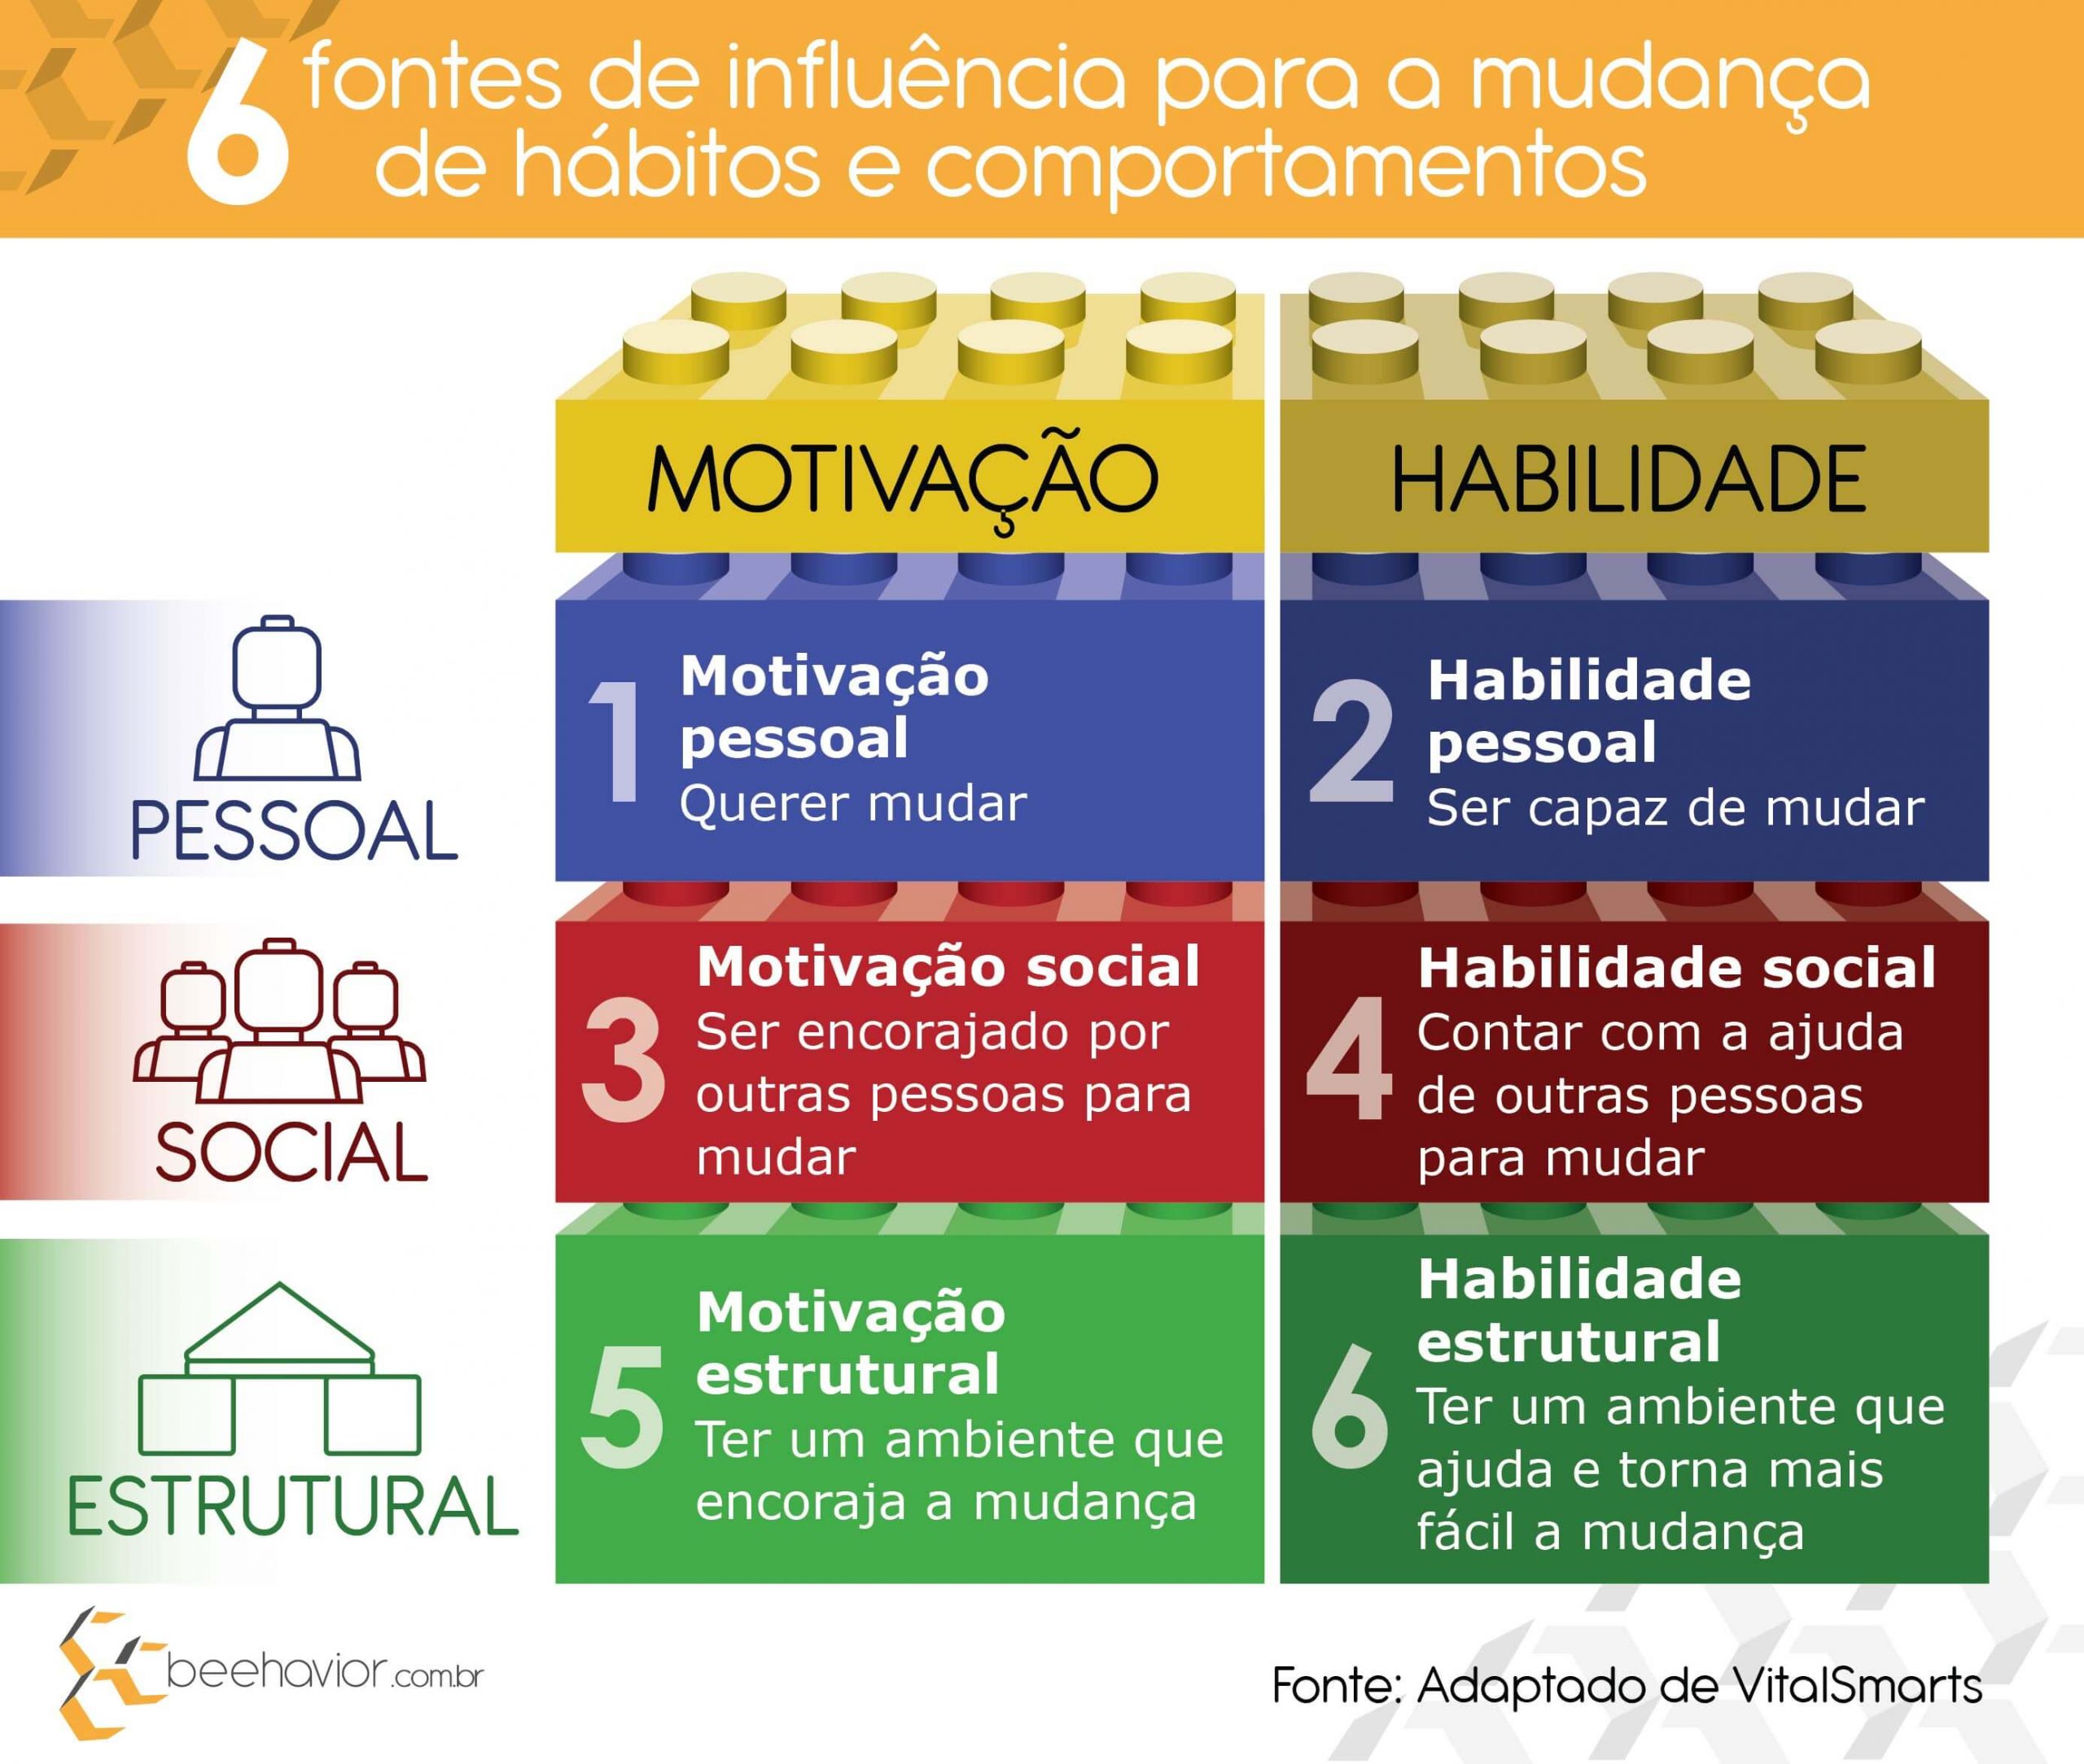 Infográfico das 6 fontes de influência para a mudança de hábitos e comportamentos